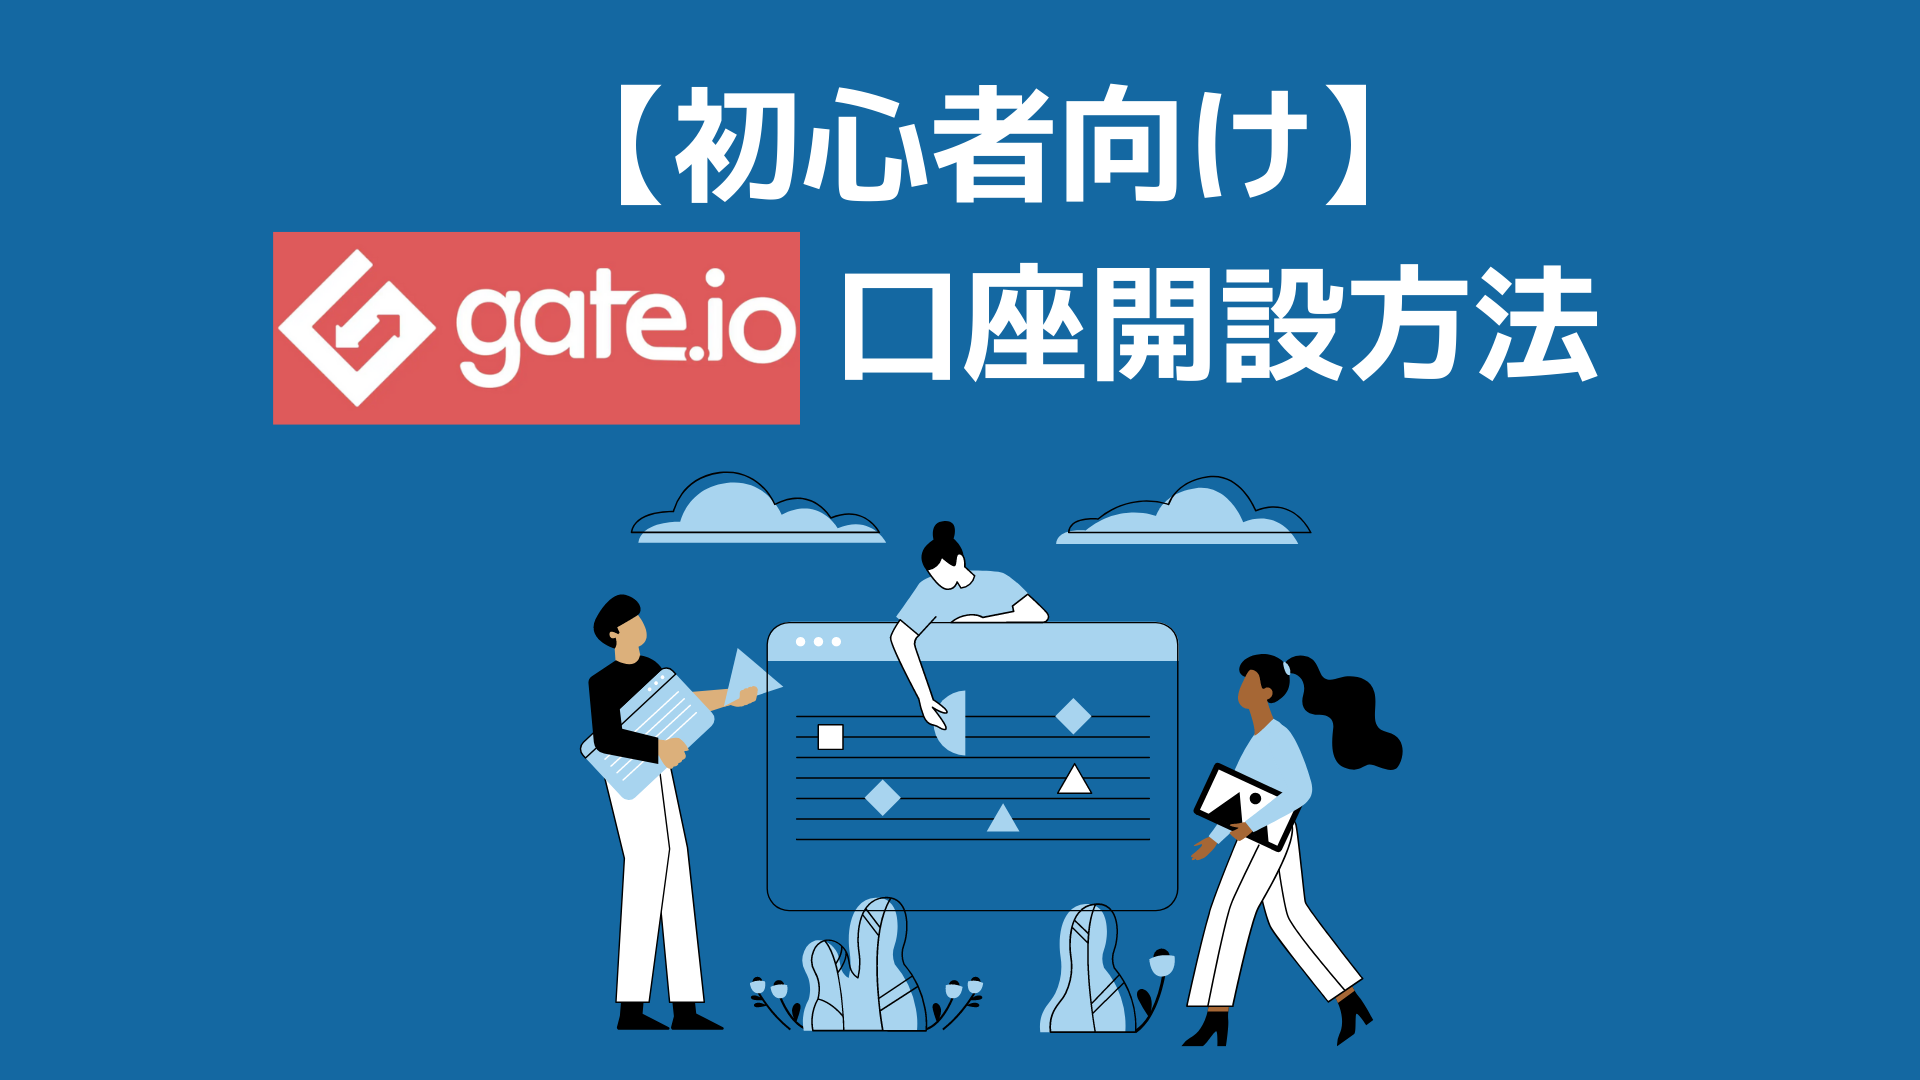 【初心者向け】Gate.io口座開設方法